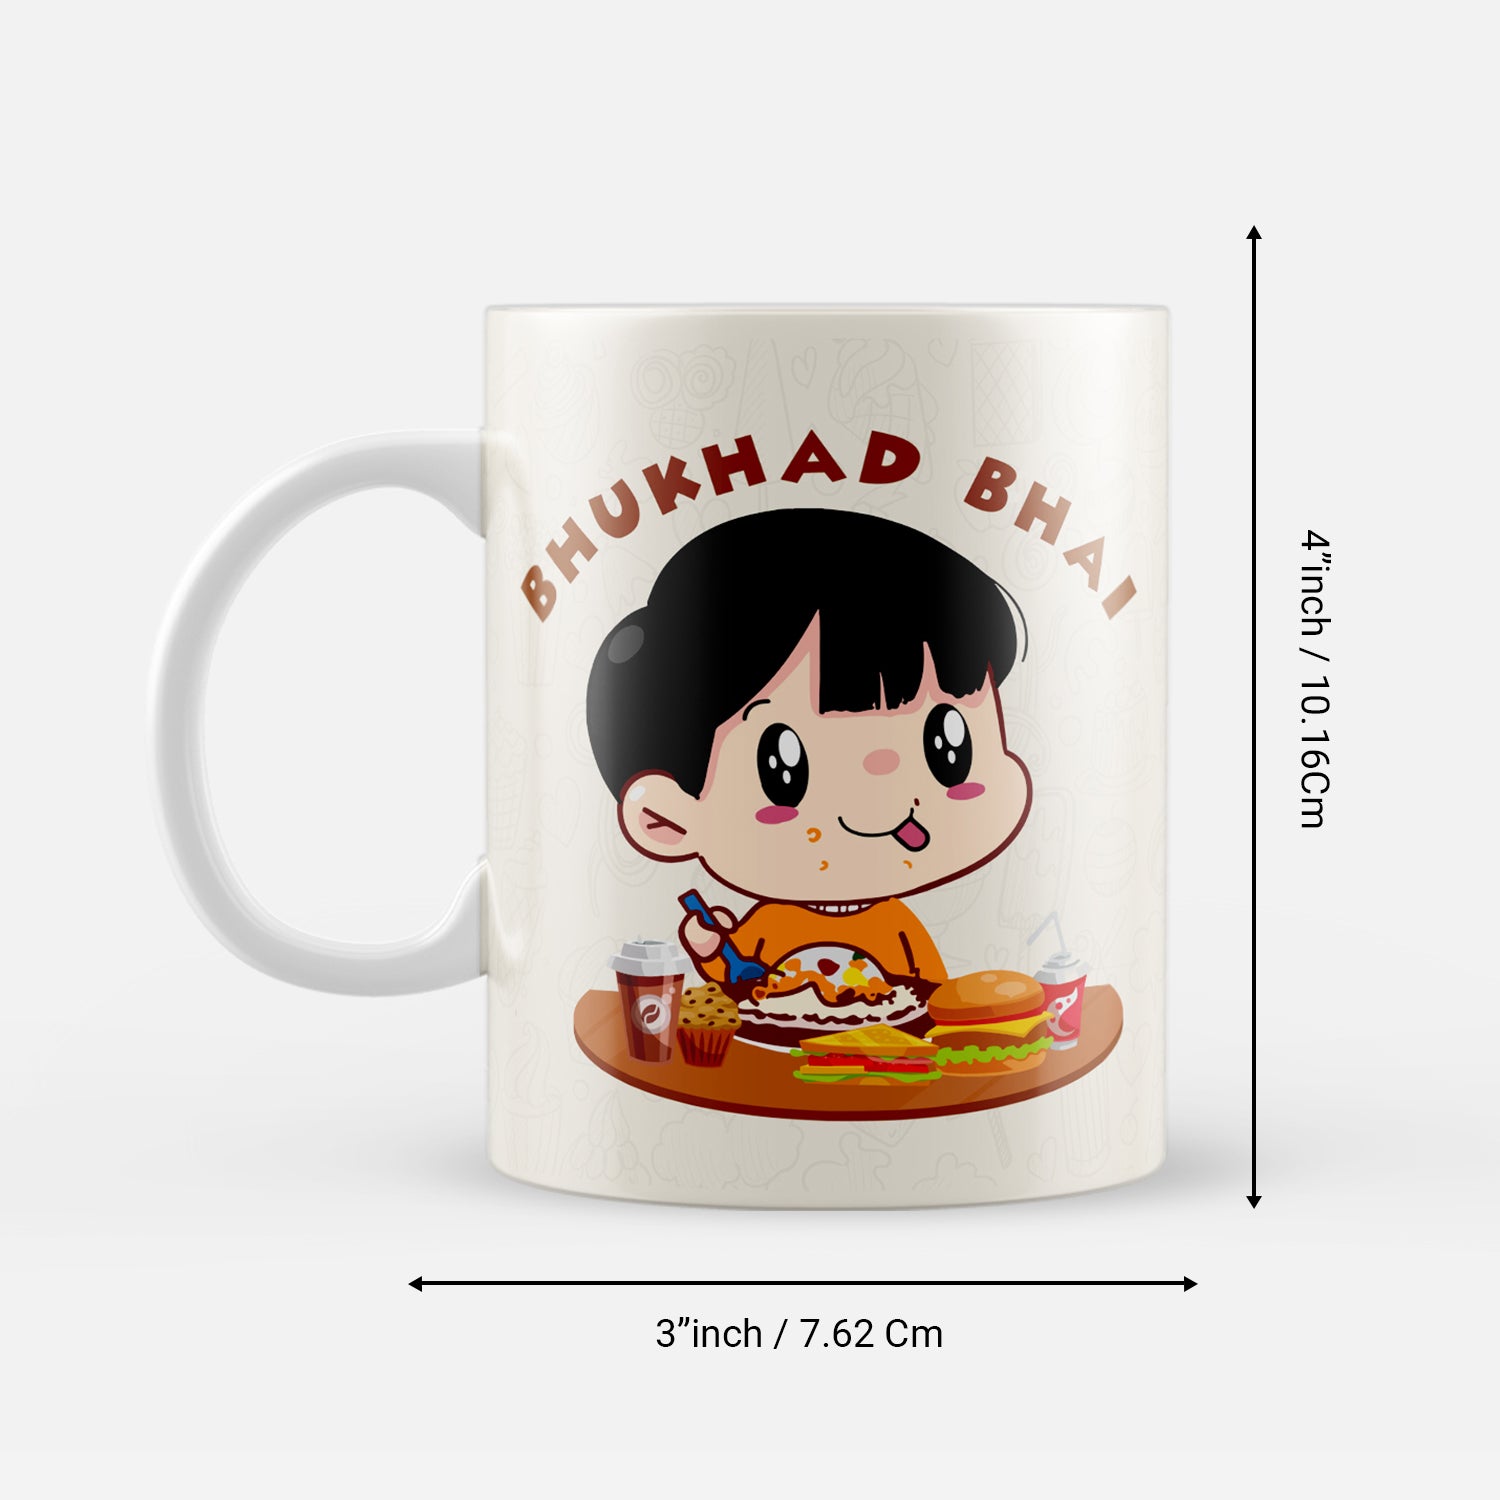 "Bhukhad Bhai" Brother Ceramic Coffee/Tea Mug 3